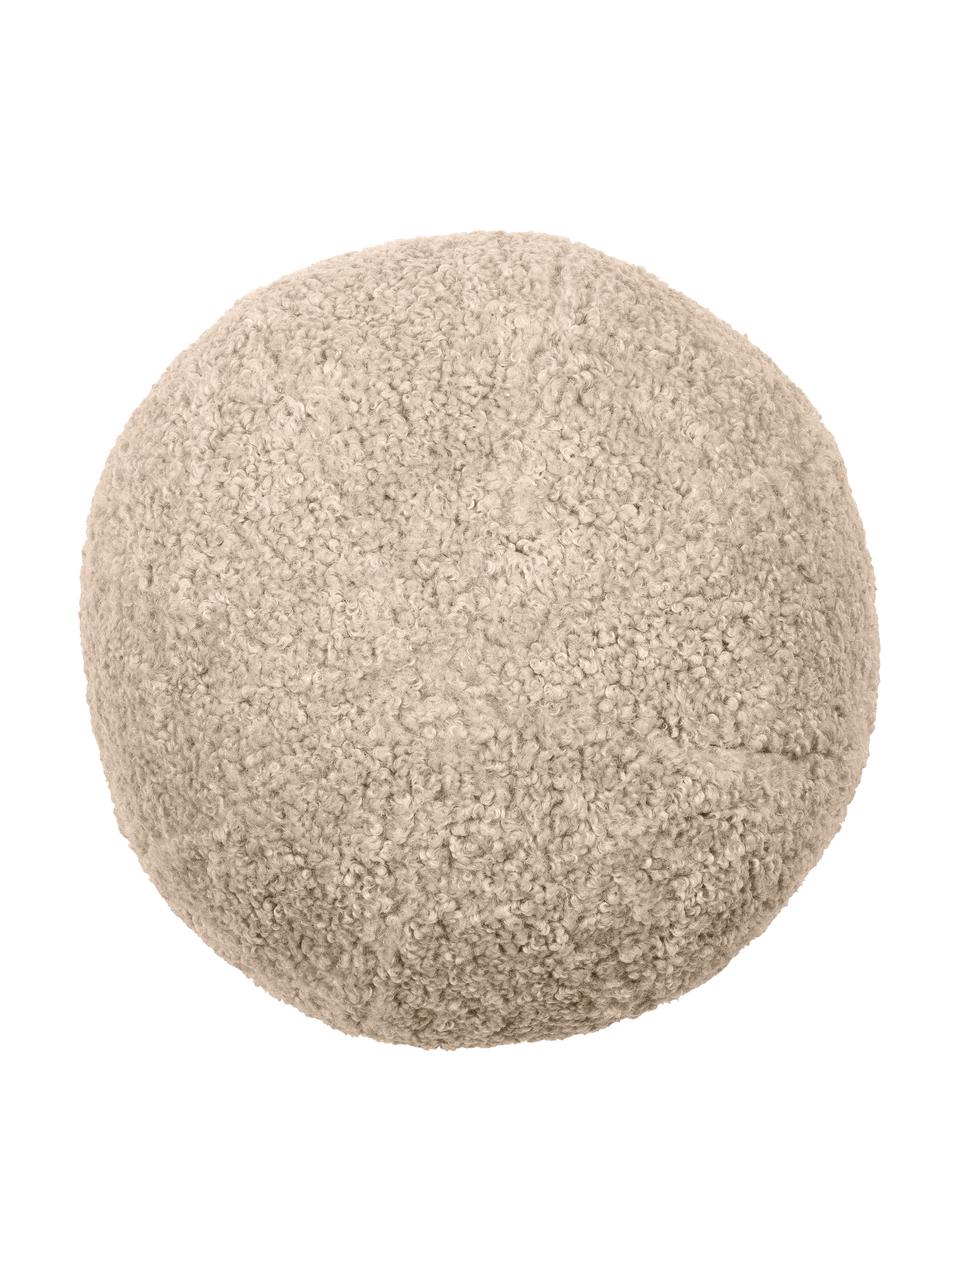 Ręcznie wykonana poduszka Teddy w kształcie kuli z wypełnieniem Palla, Tapicerka: 100% poliester, Odcienie piaskowego, Ø 30 cm